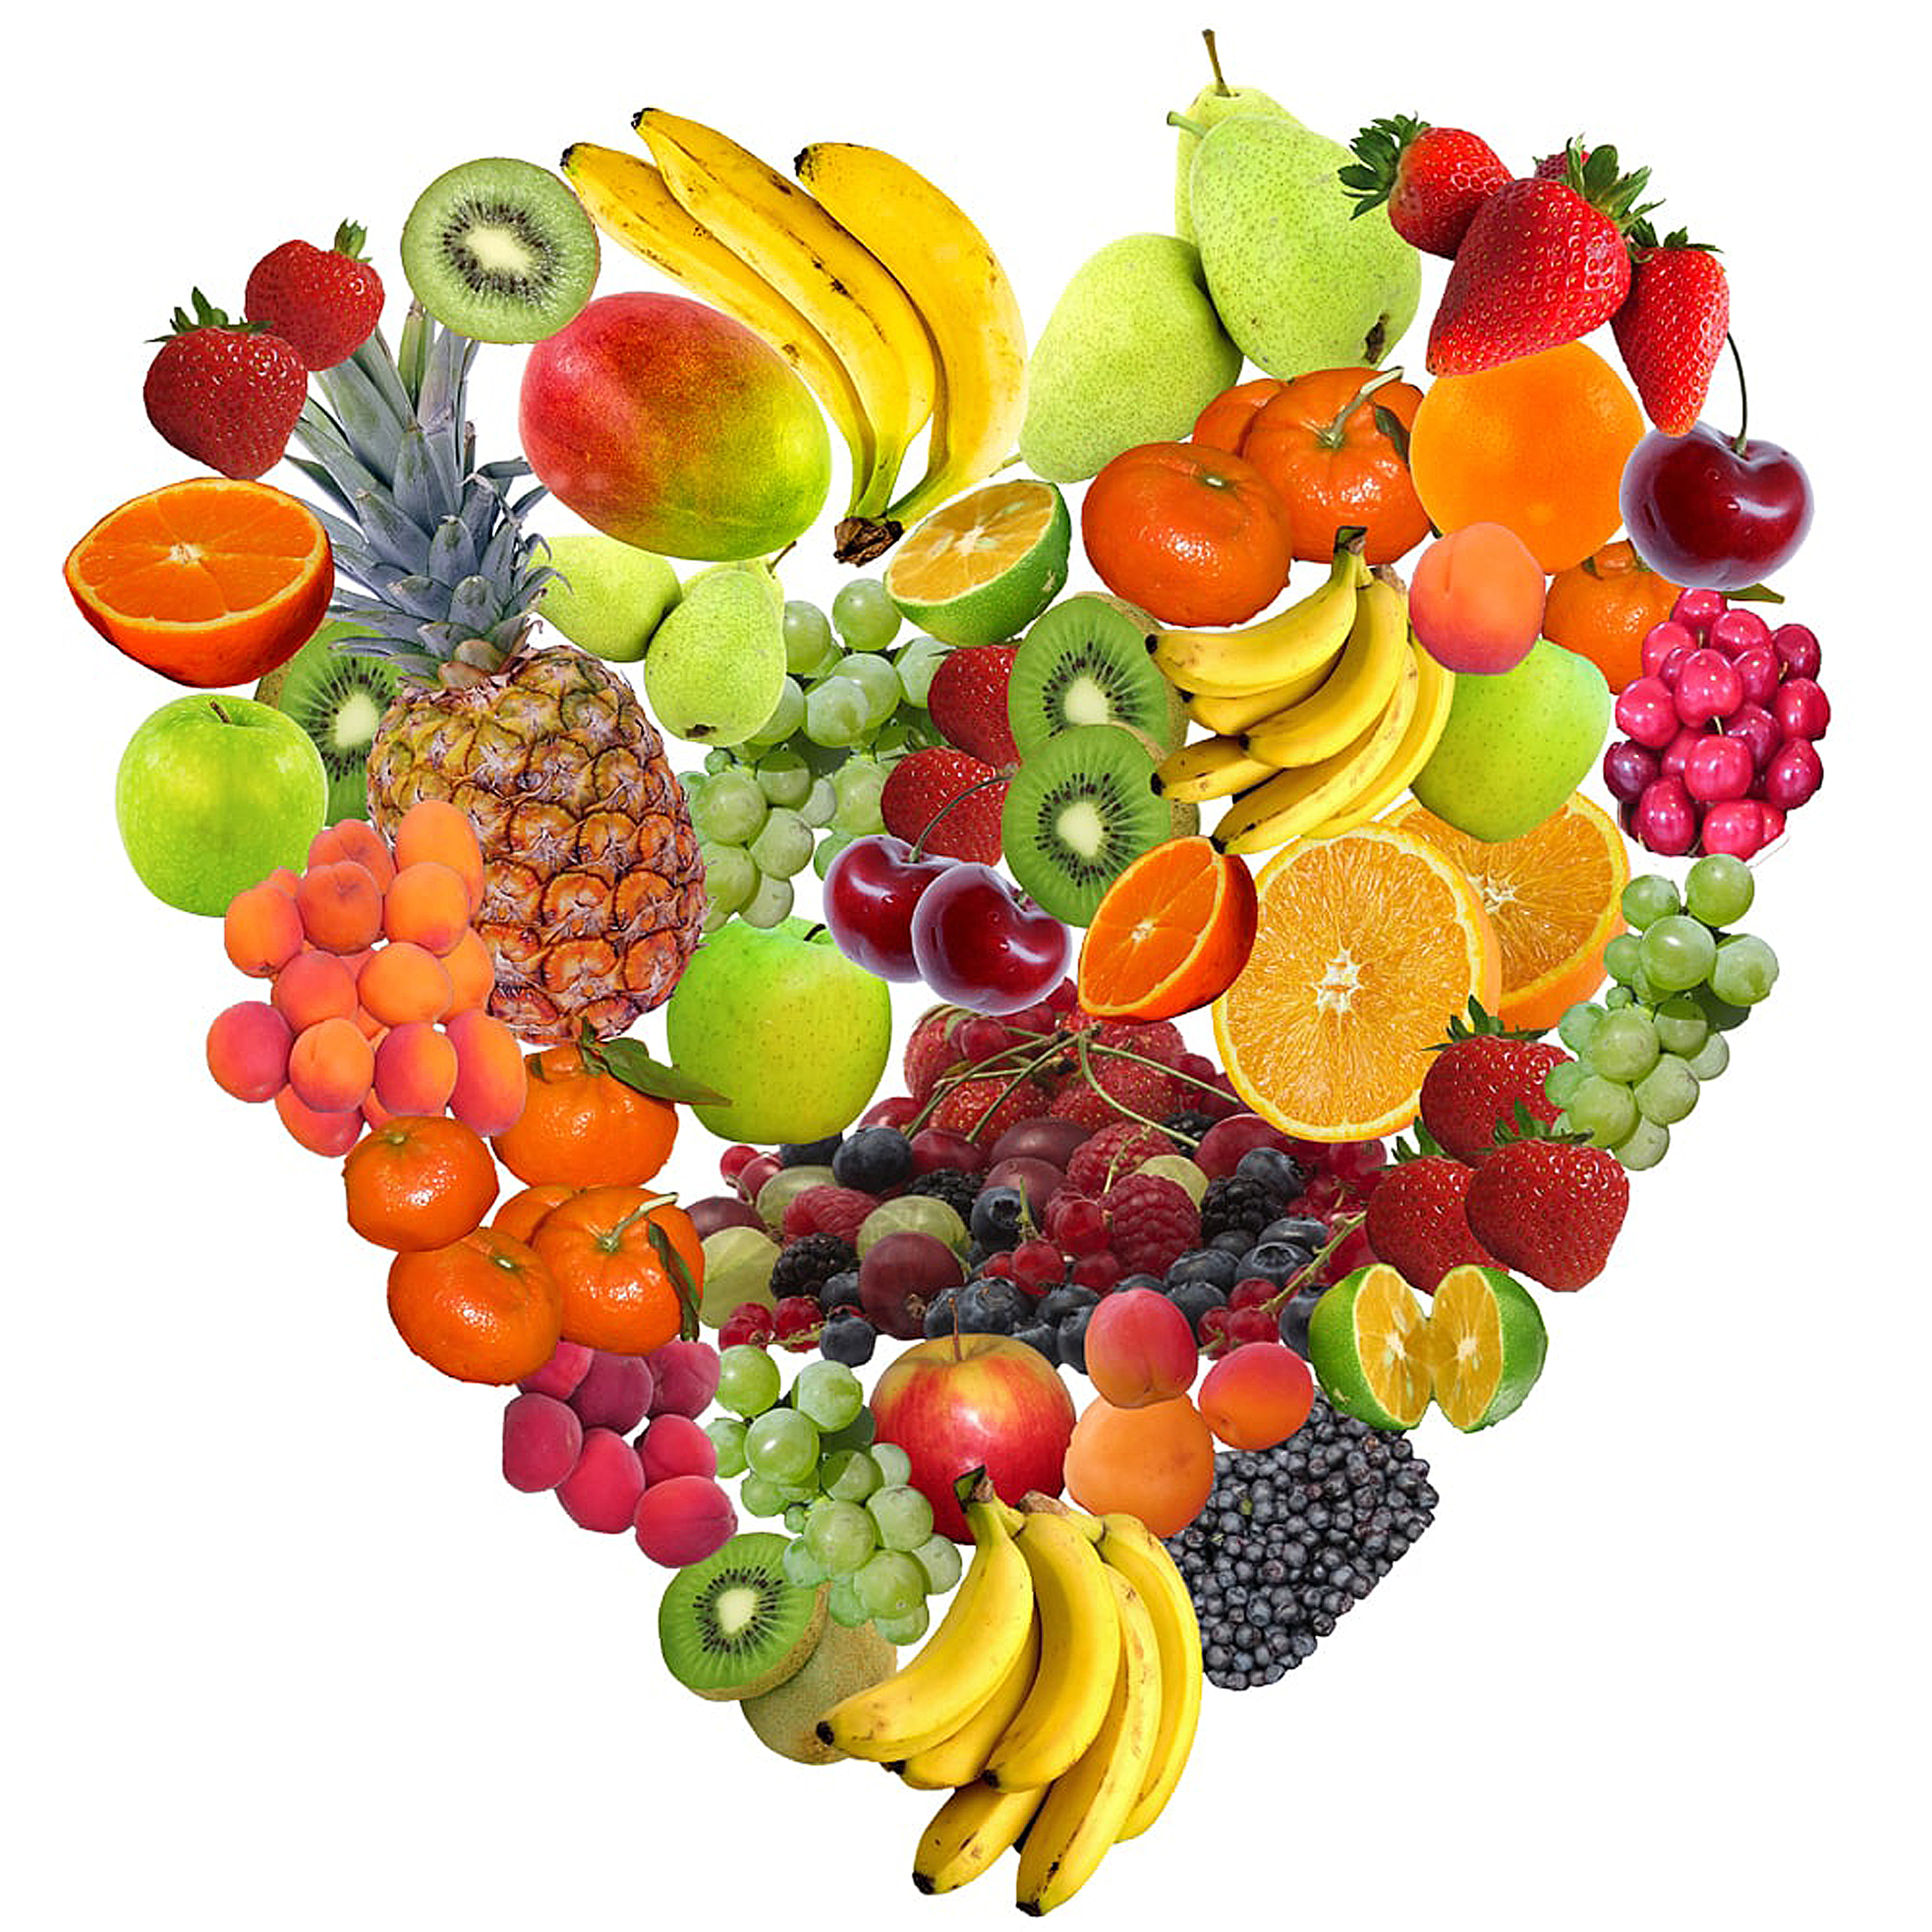 Mangiate frutta e verdura ogni giorno per una dieta sana.